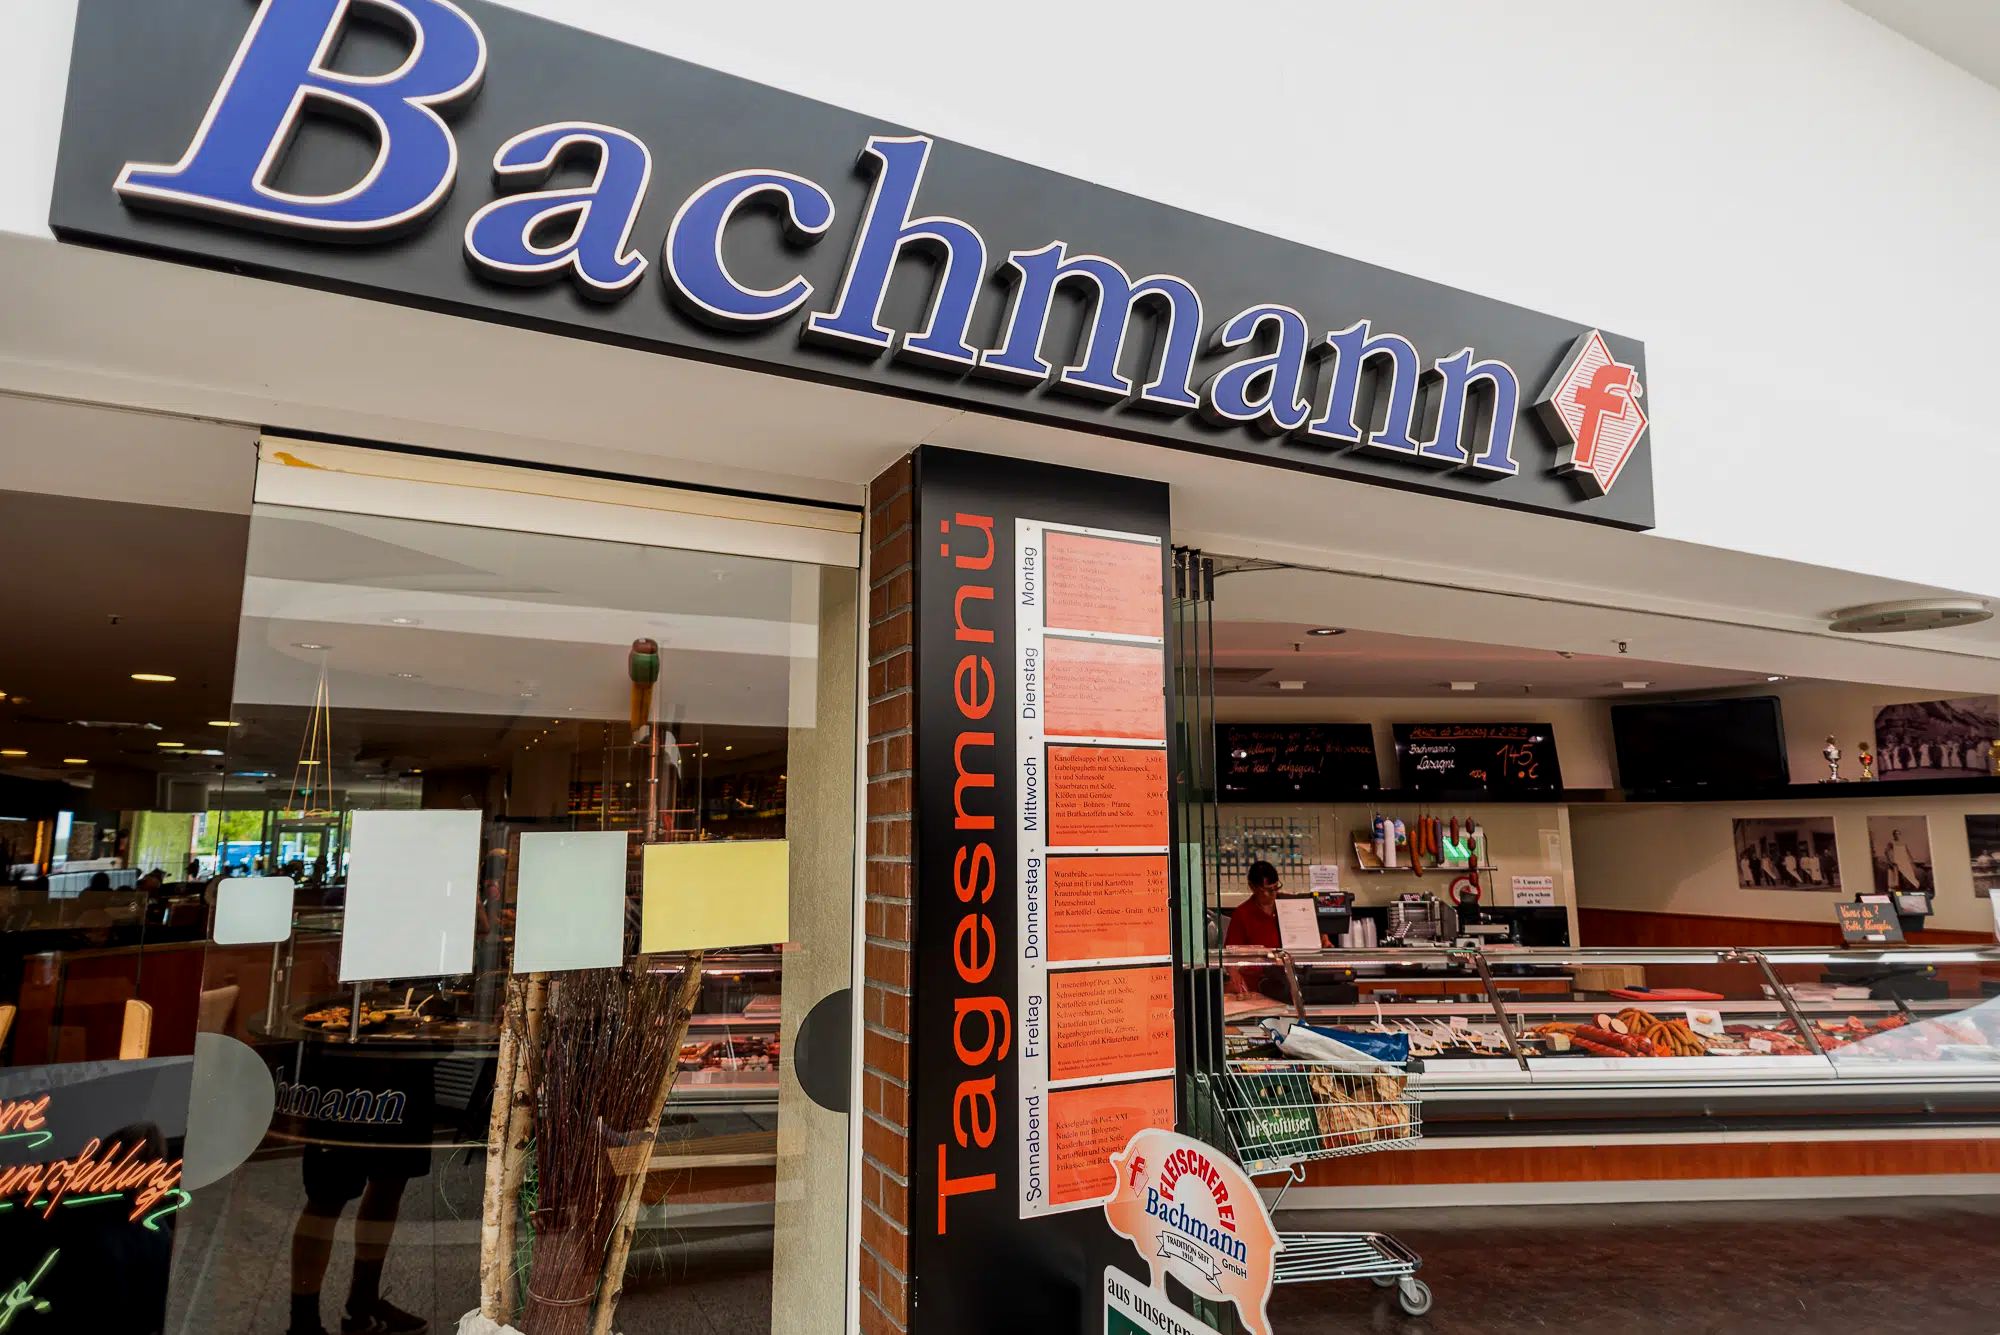 FLEISCHEREI Bachmann GmbH